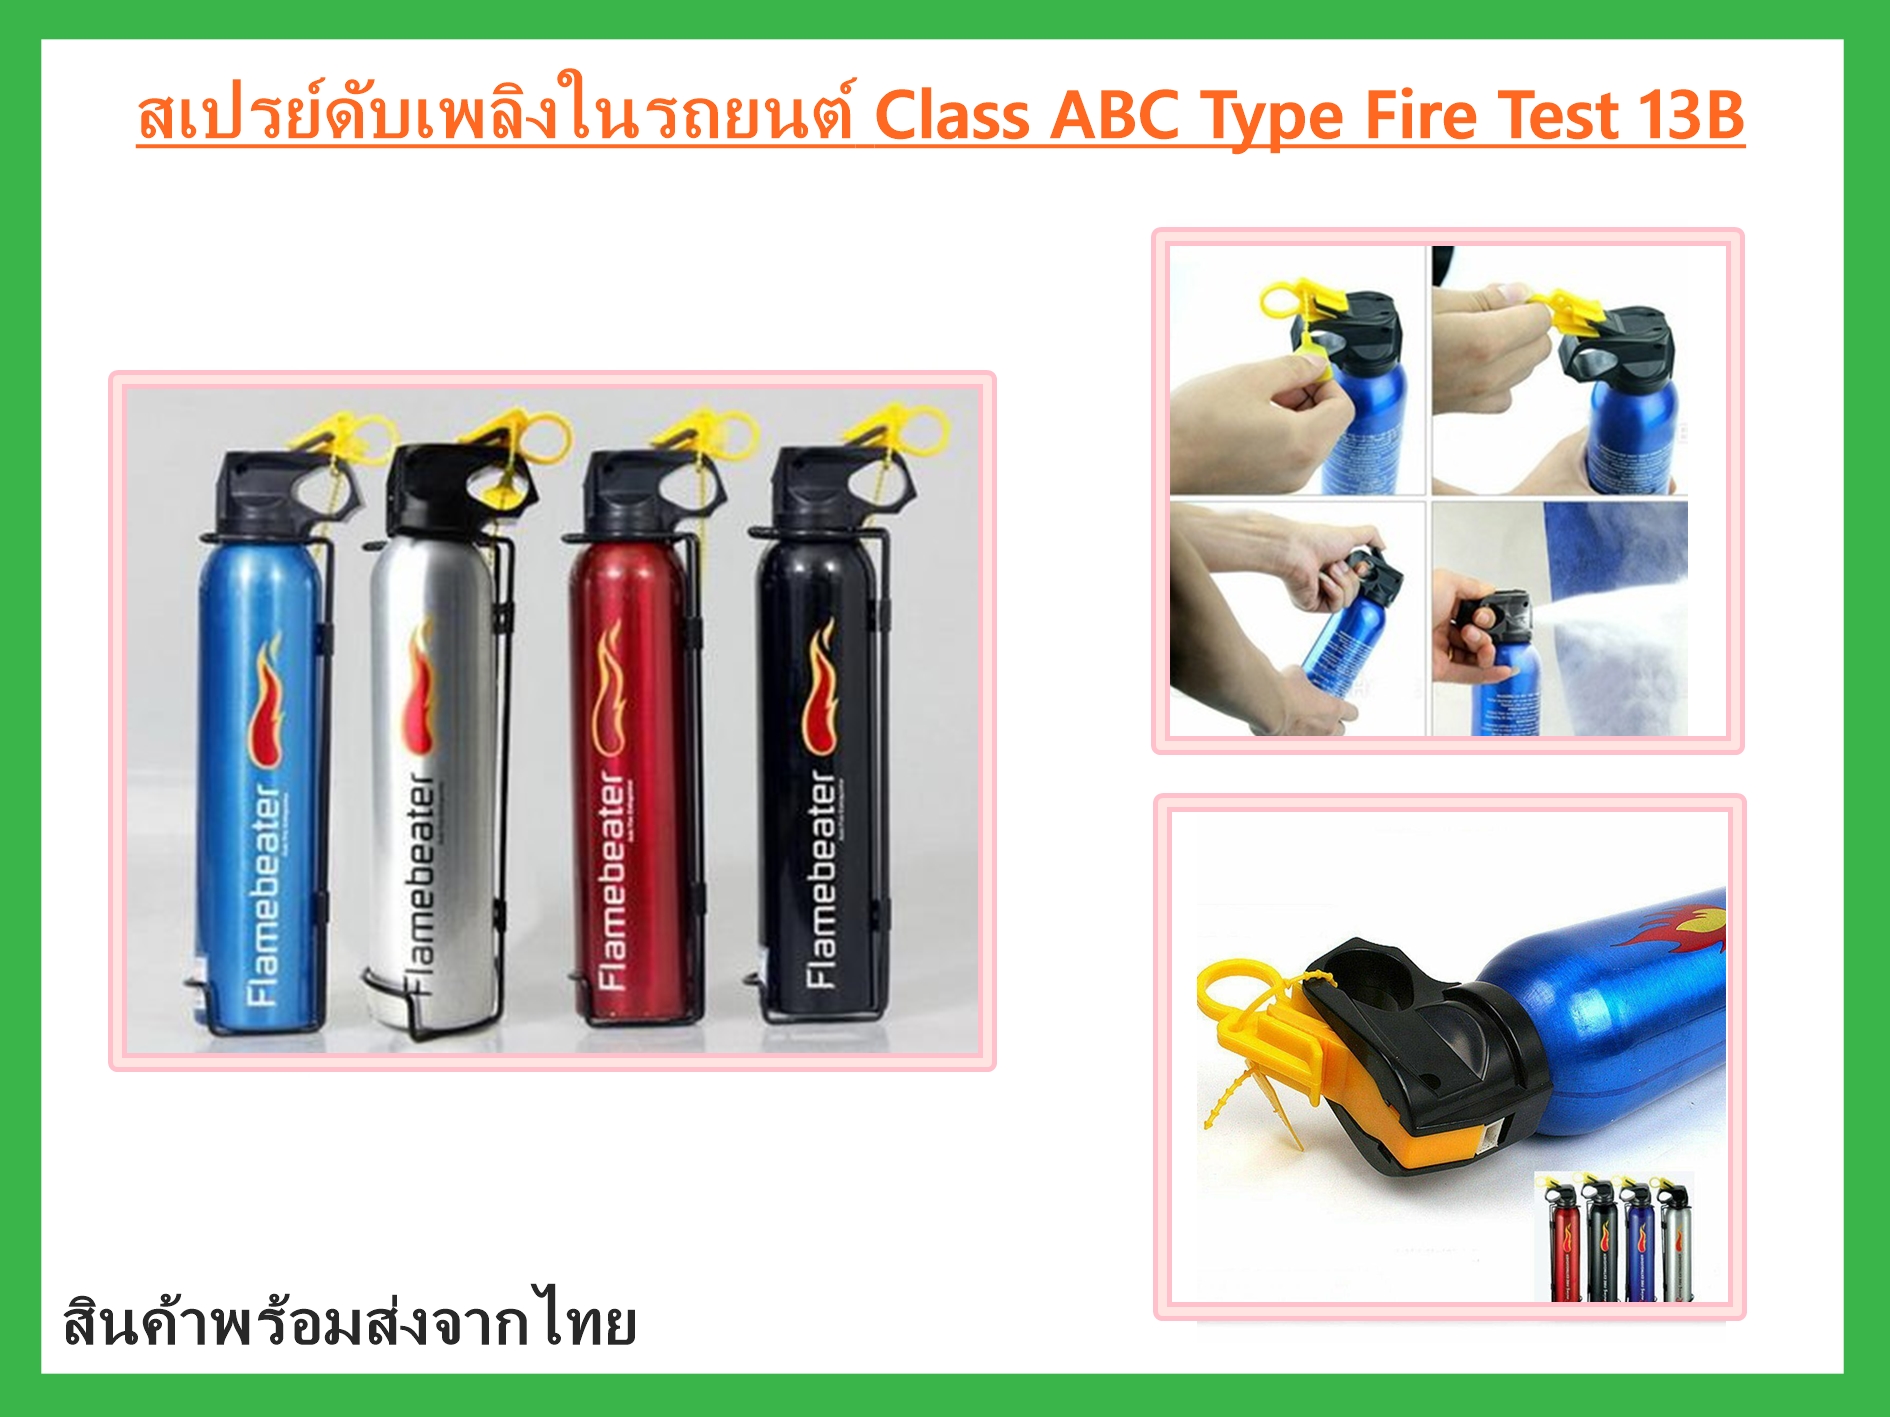 'สเปรย์ดับเพลิงในรถยนต์ Class ABC Type Fire Test 13B สี Red